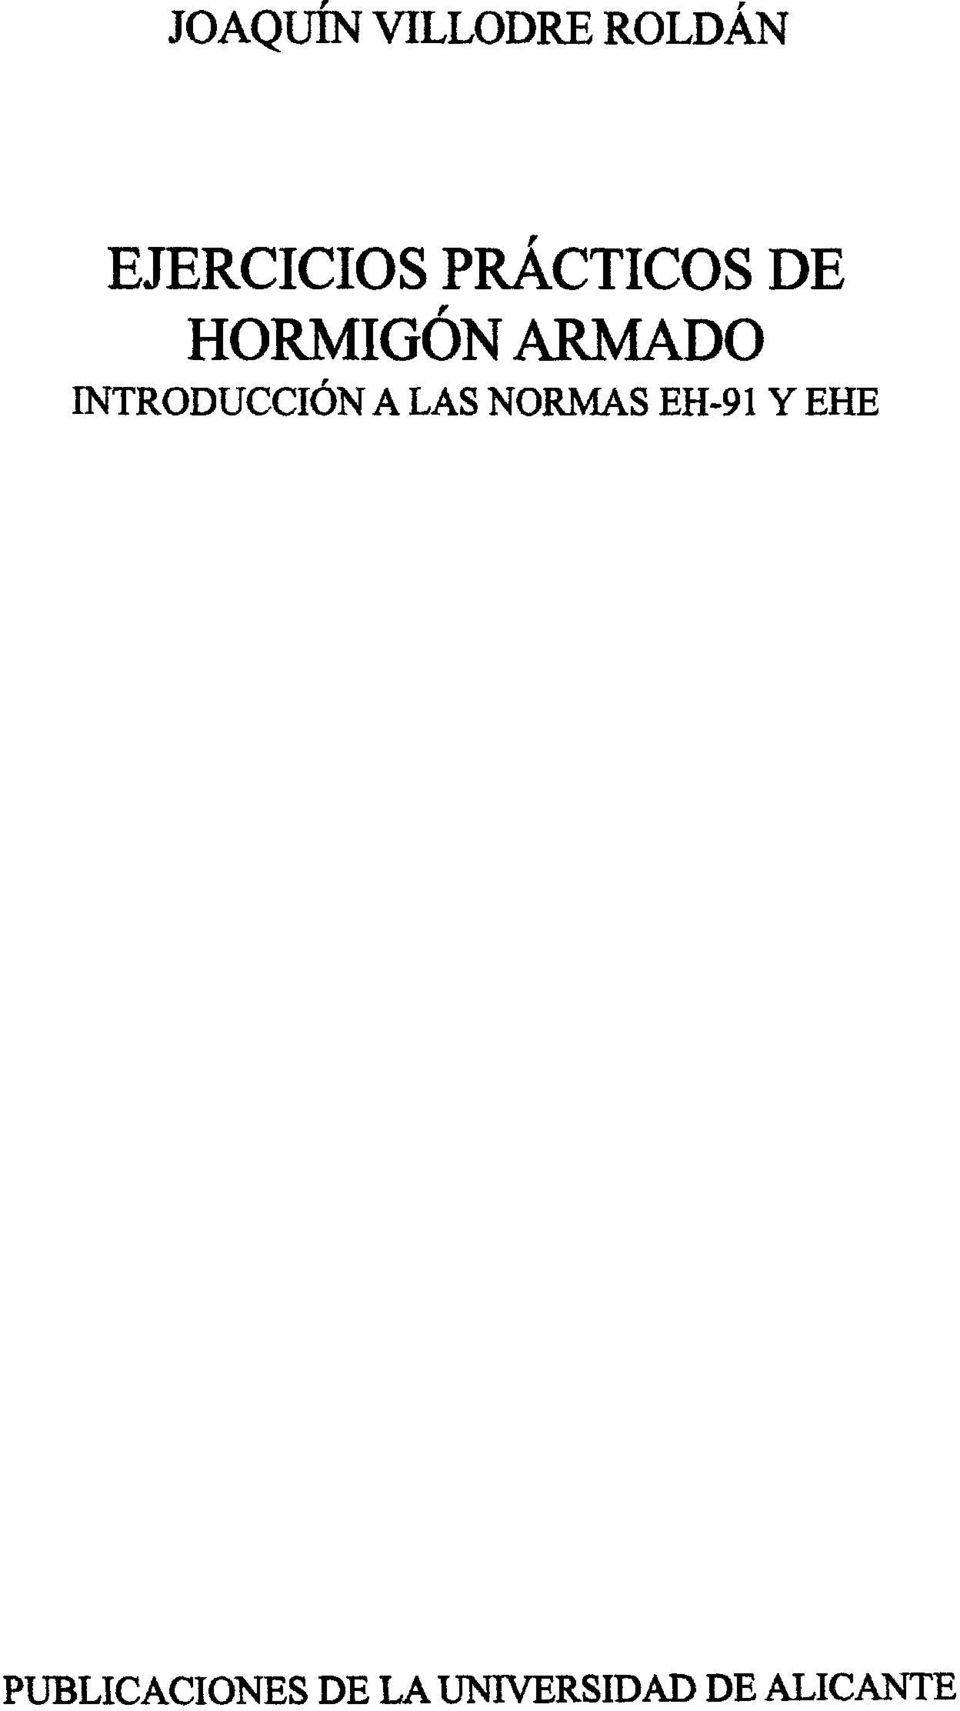 INTRODUCCIÓN A LAS NORMAS EH-91 Y